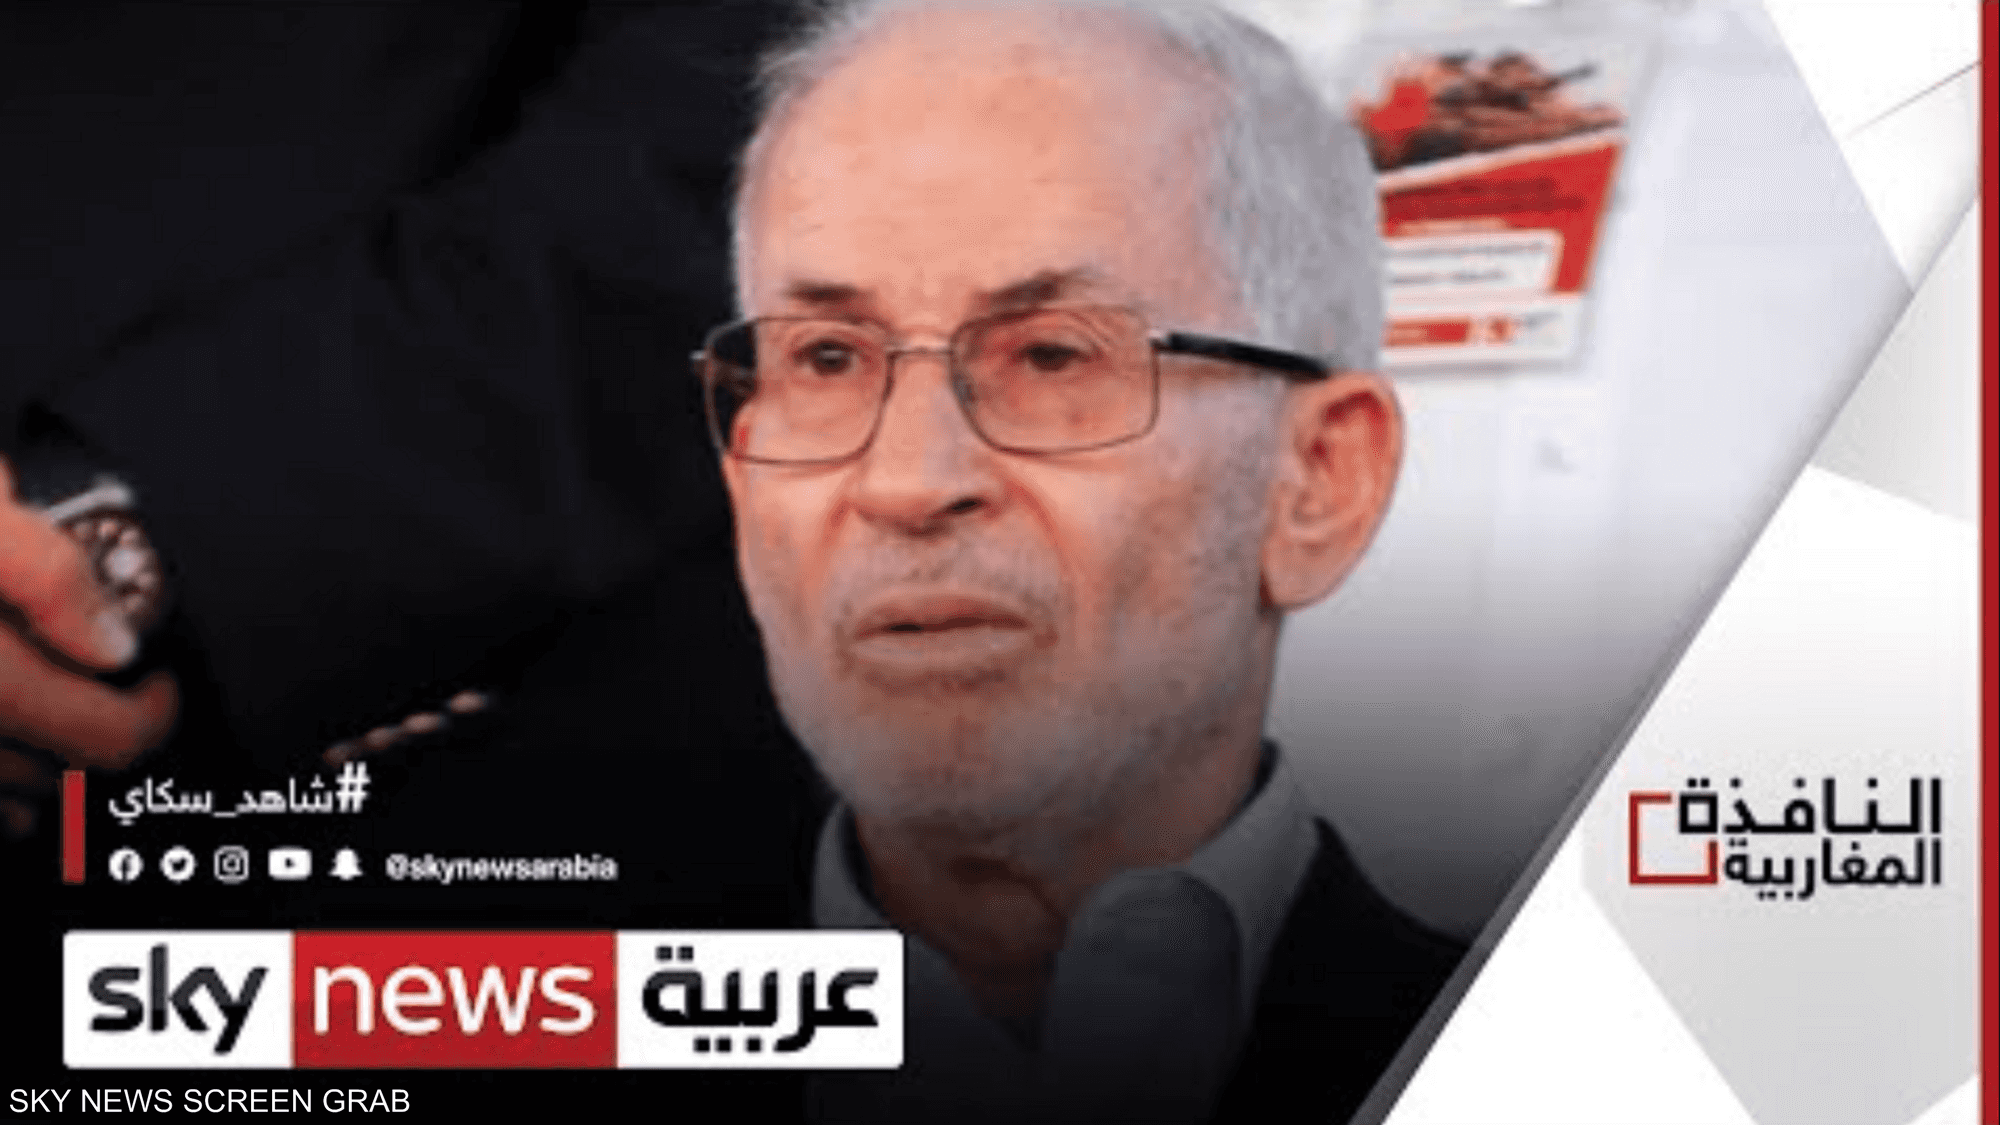 تنظيم الإخوان في ليبيا يطالب بوقف قانون الانتخابات